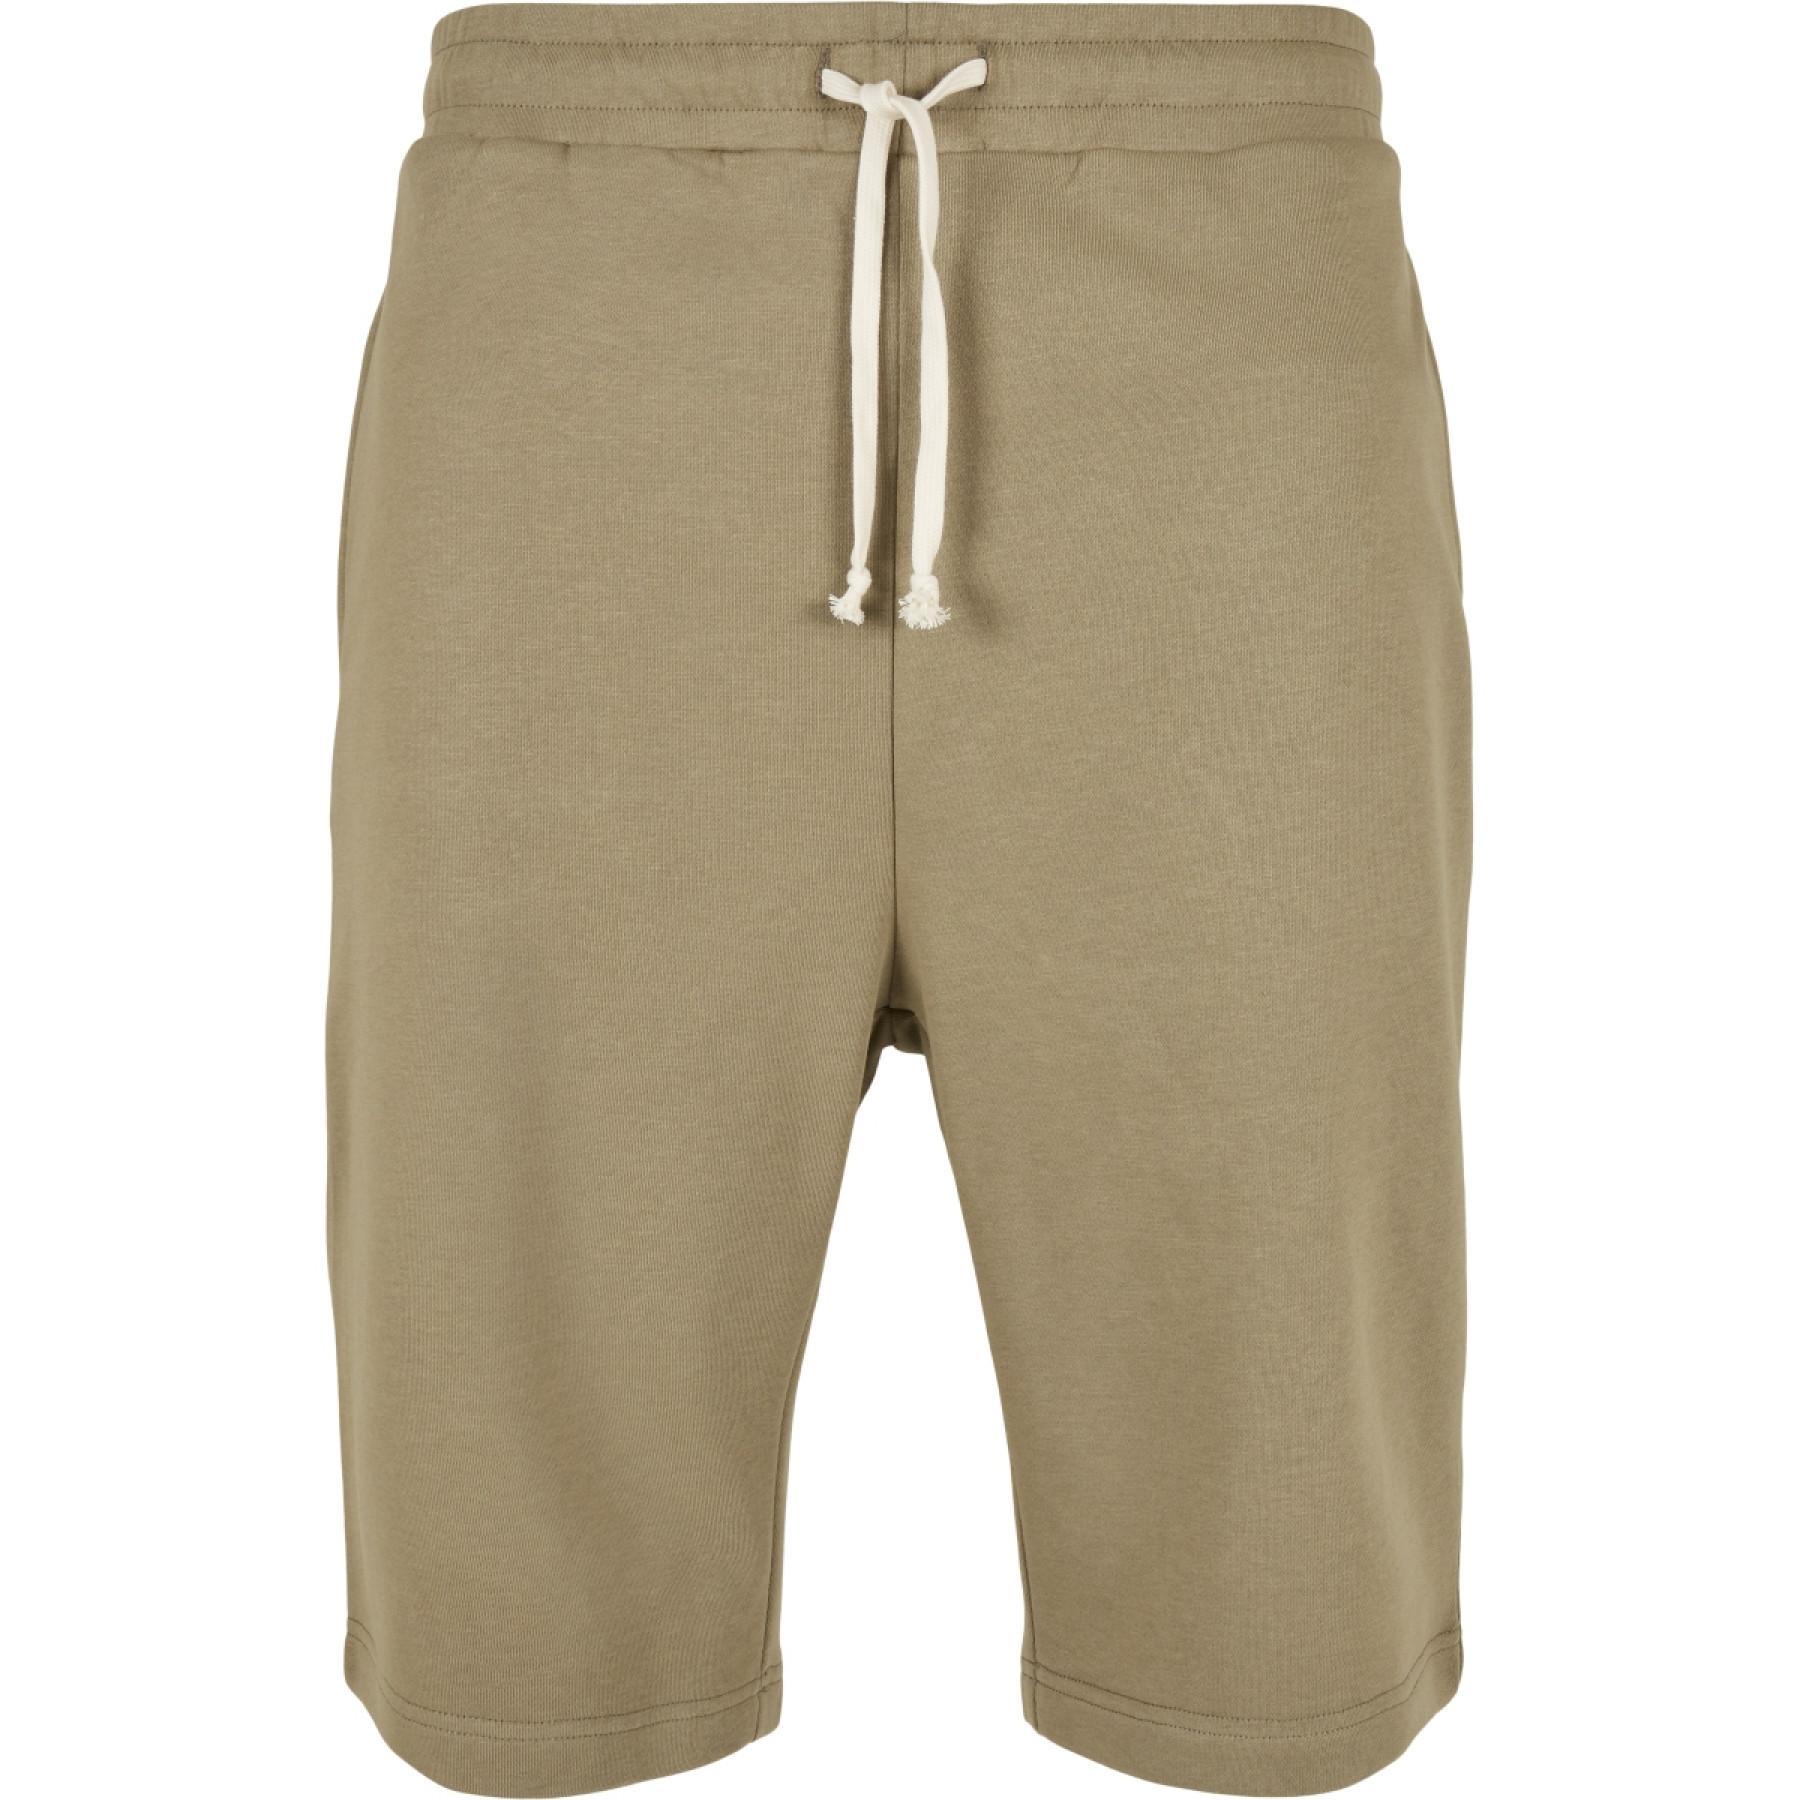 Pantalón corto Urban Classics low crotch-tamaños grandes